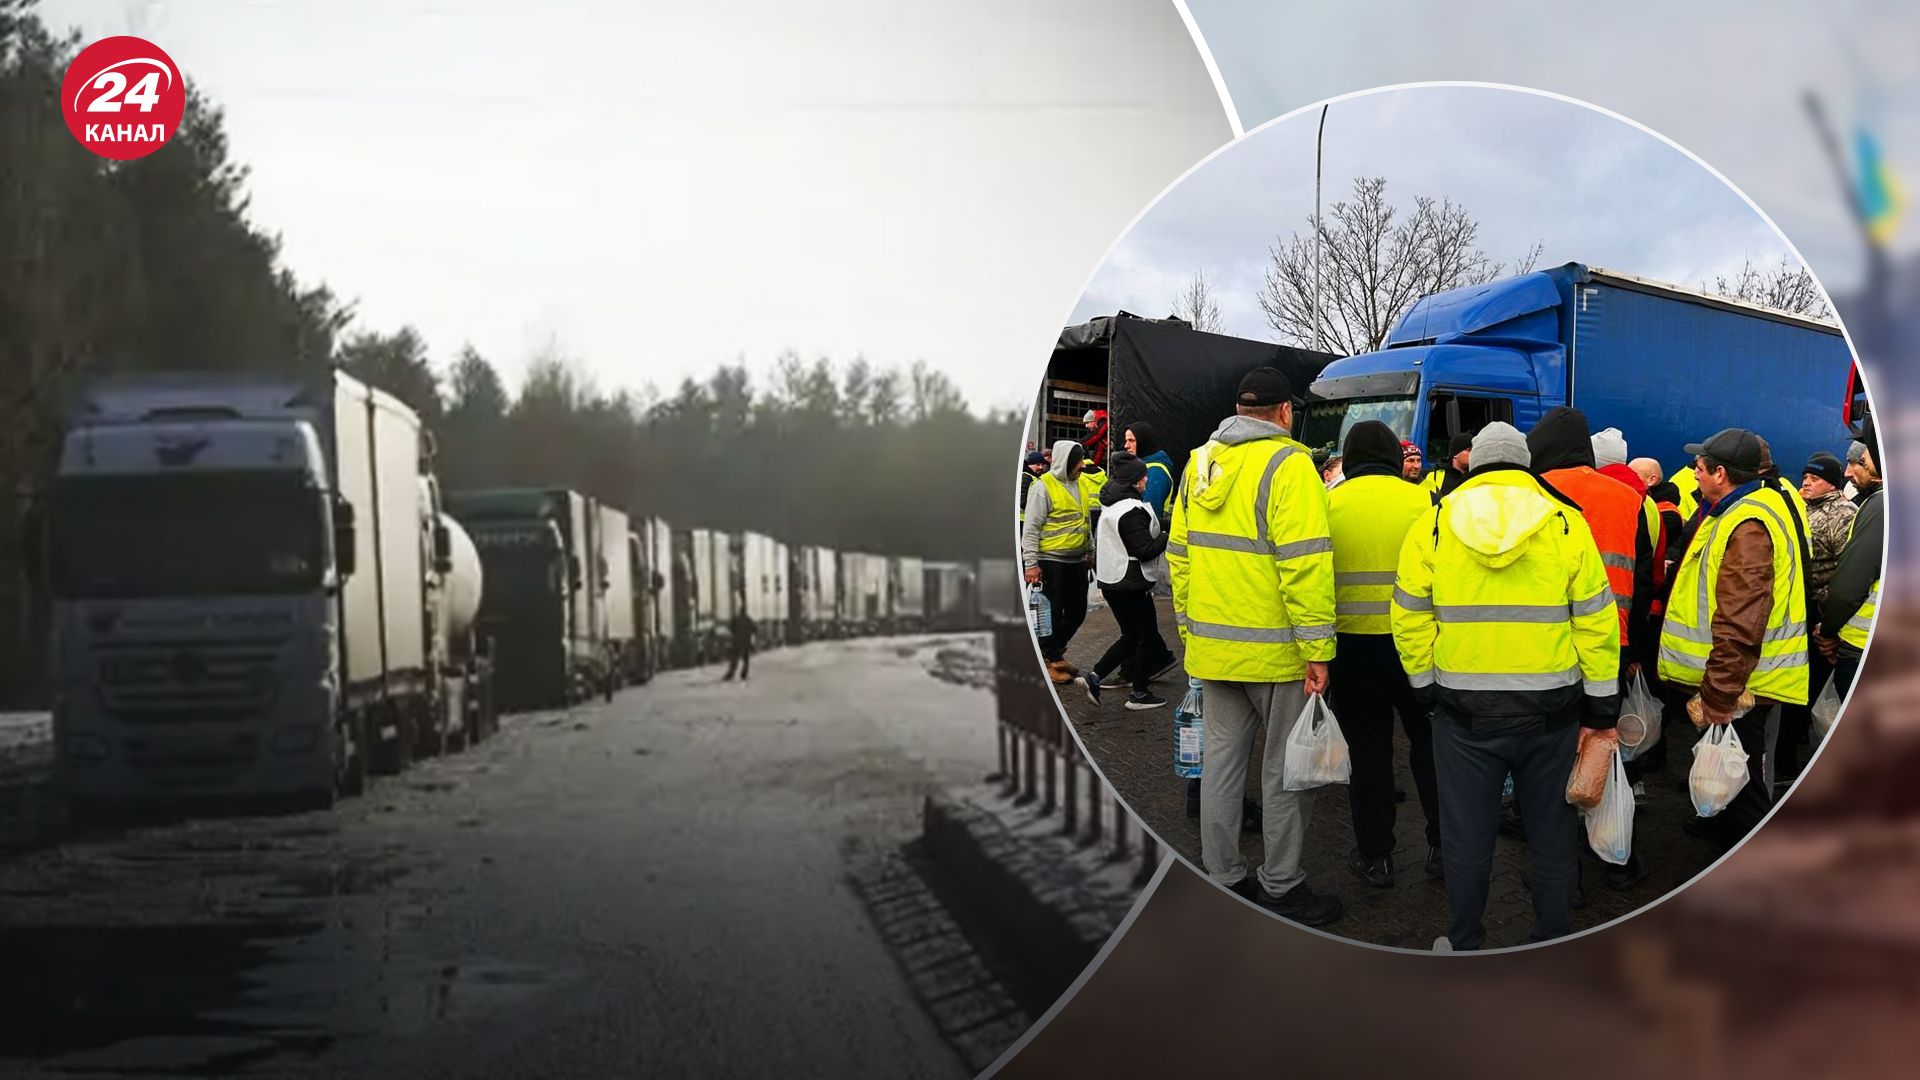 Польскі перевізники заблокували кордон з Україною